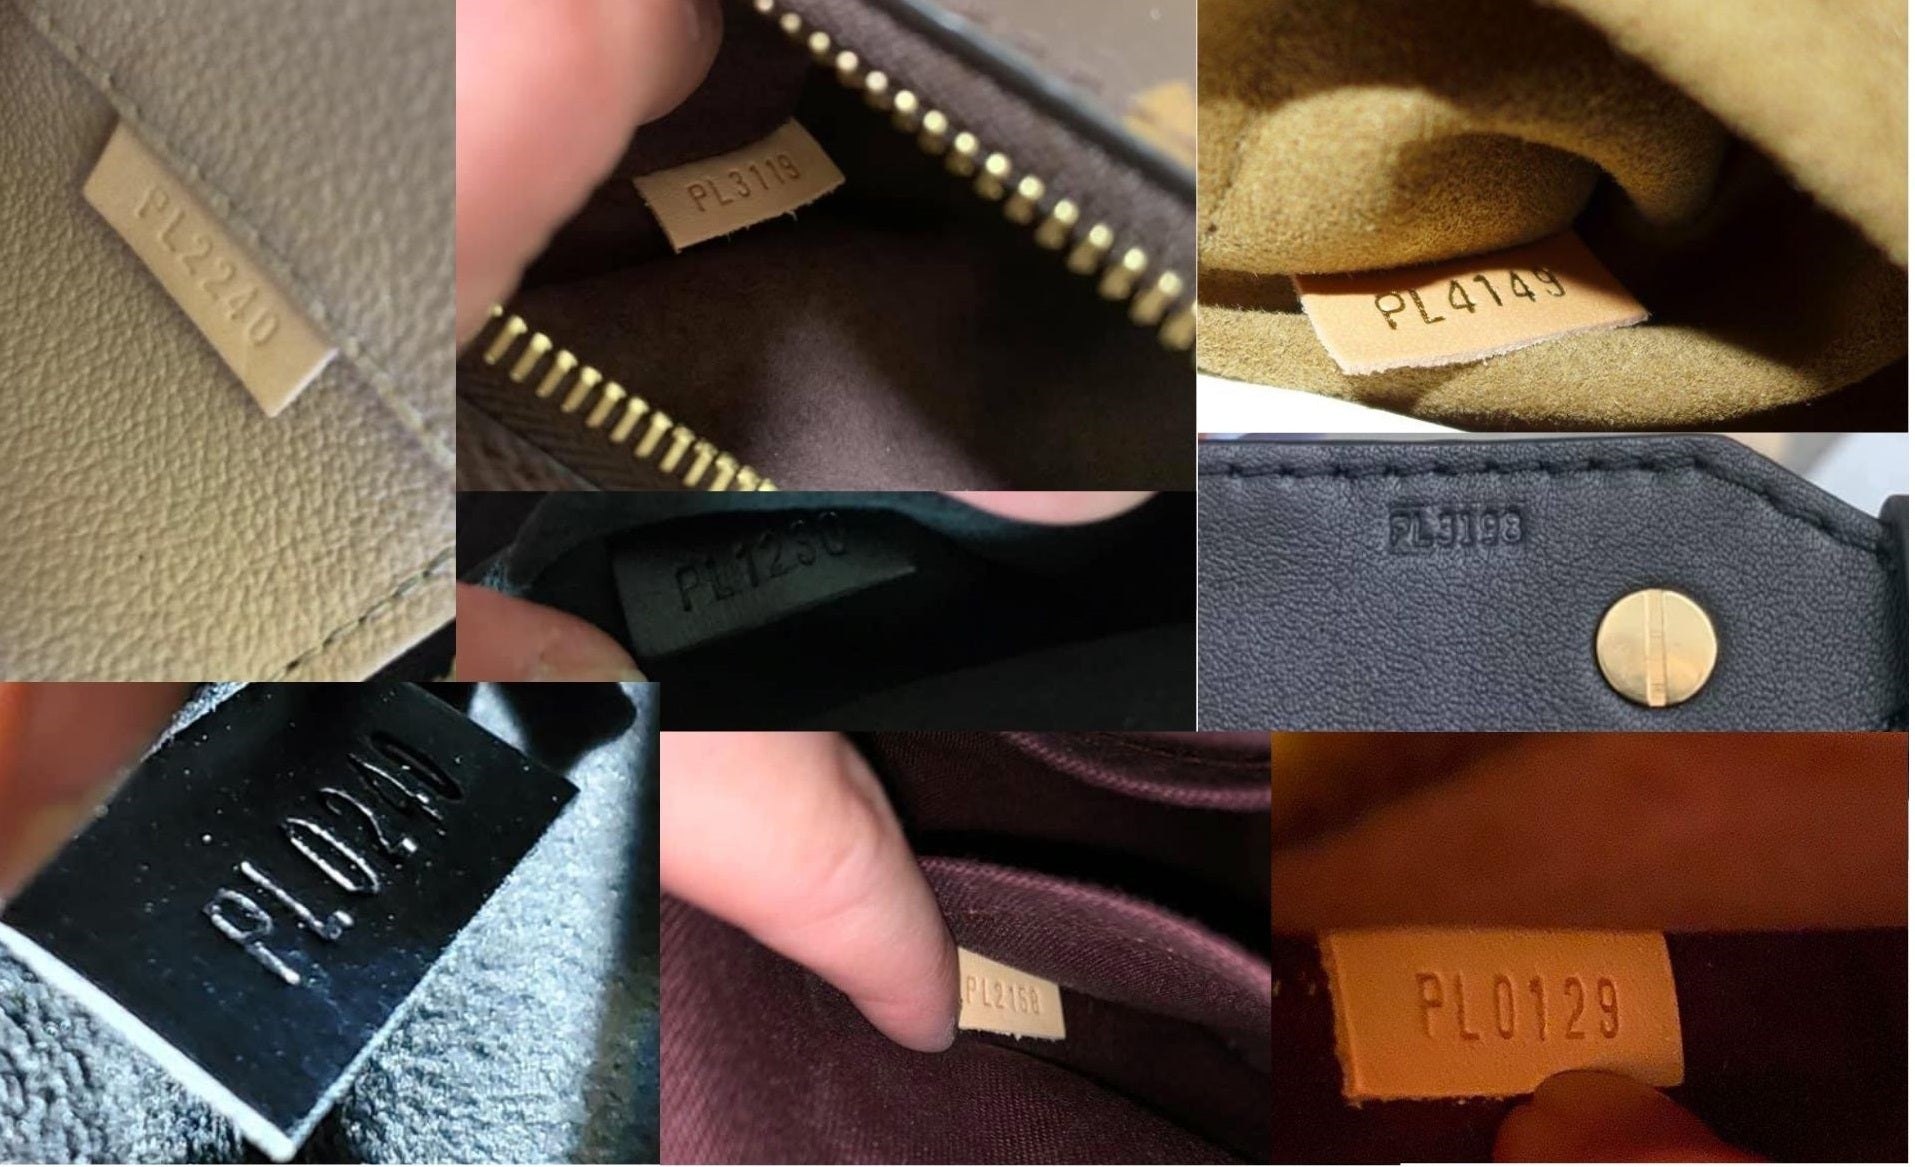 Etiqueta masculina: Louis Vuitton nos enseña cómo elegir el cinturón  perfecto